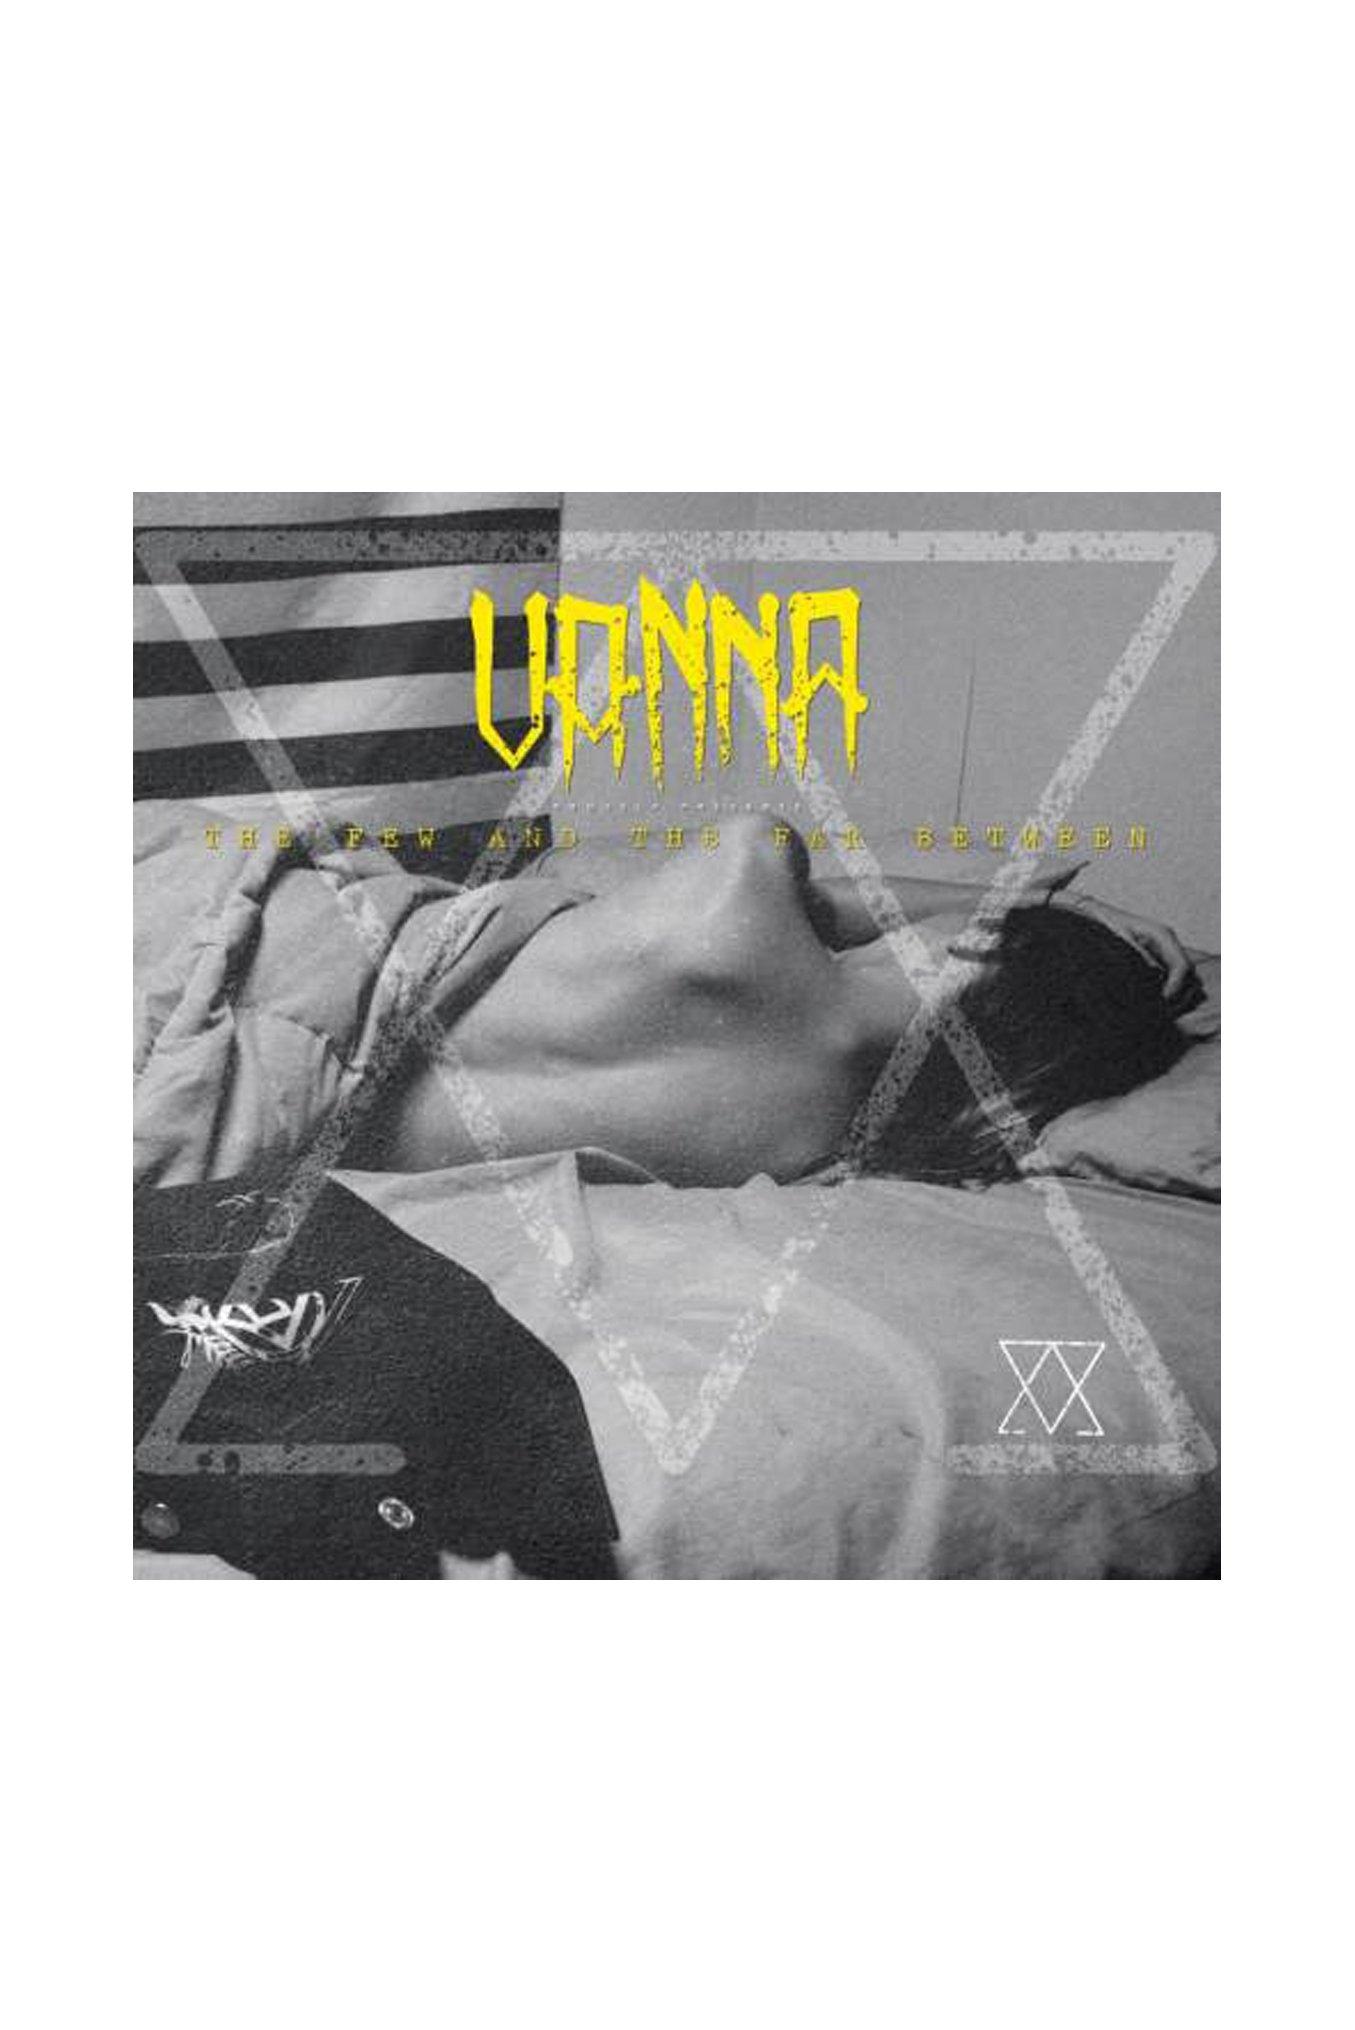 Vanna - The Few And The Far Between CD, , hi-res